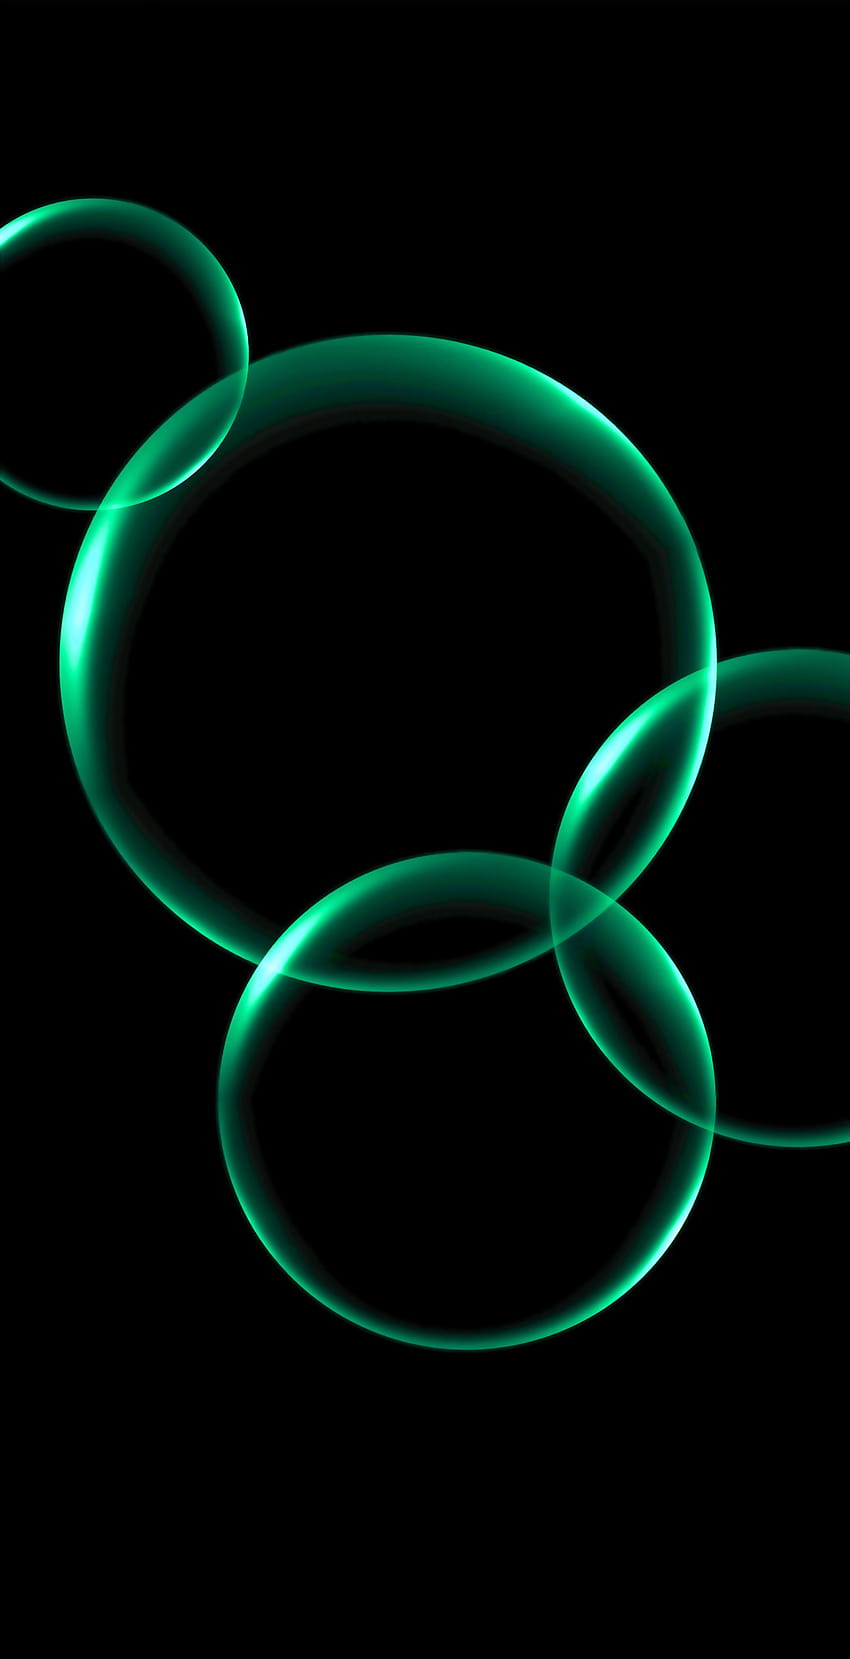 Sfondi neri bolle verdi idk come renderlo ottimizzato oled :, oled verde scuro Sfondo del telefono HD